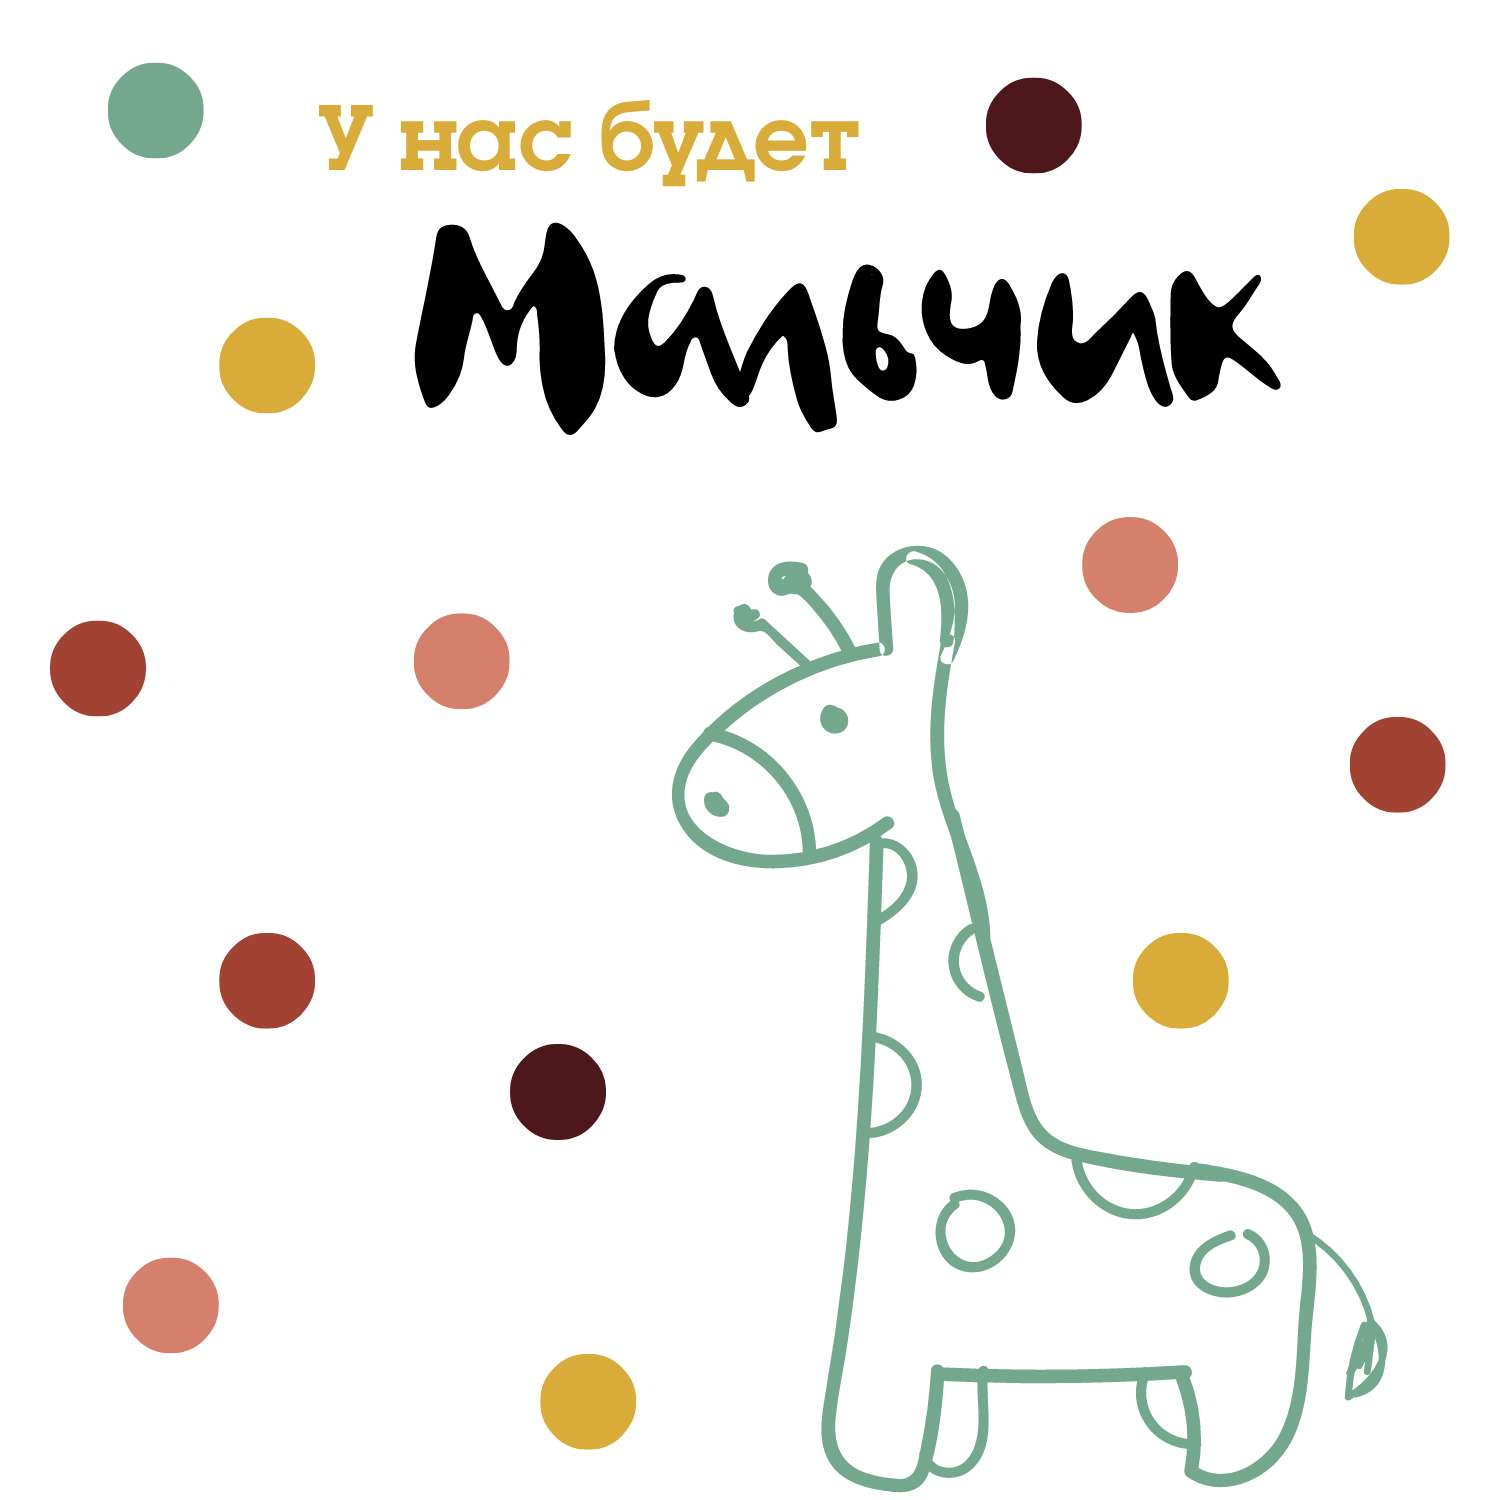 Милая открытка анонс "У нас будет мальчик" с нарисованным жирафом и разноцветными конфетти на фоне